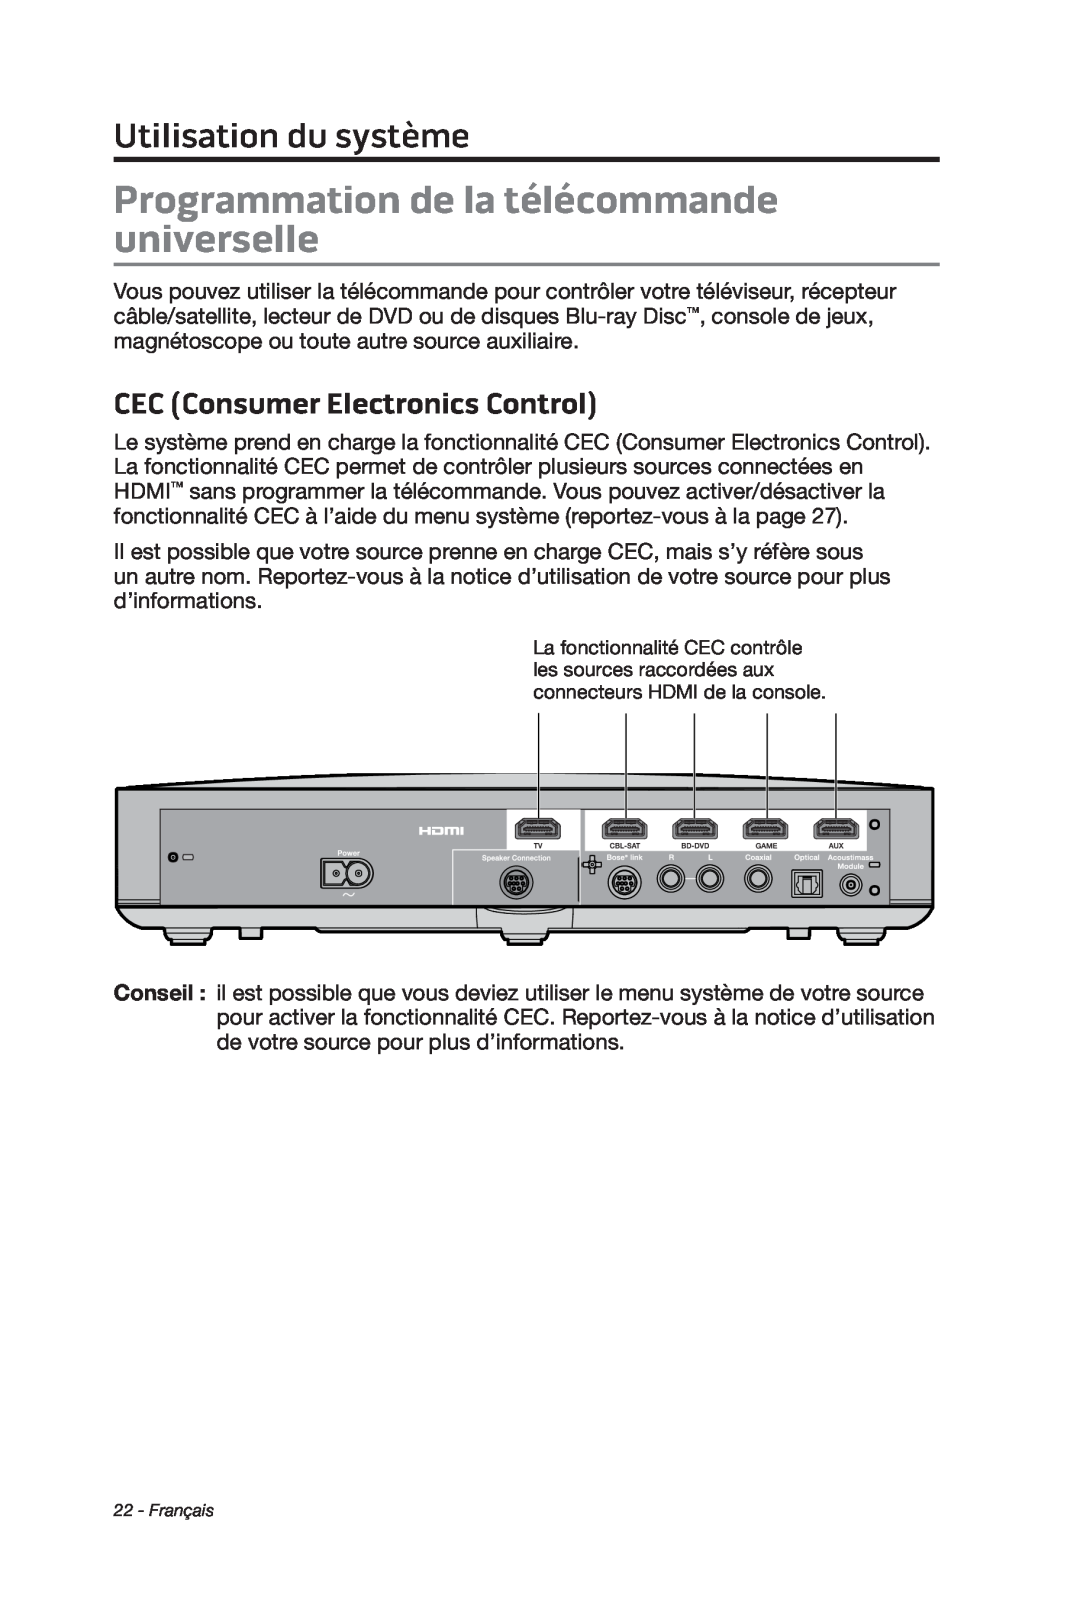 Bose cinemate manual Programmation de la télécommande universelle, CEC Consumer Electronics Control, Utilisation du système 